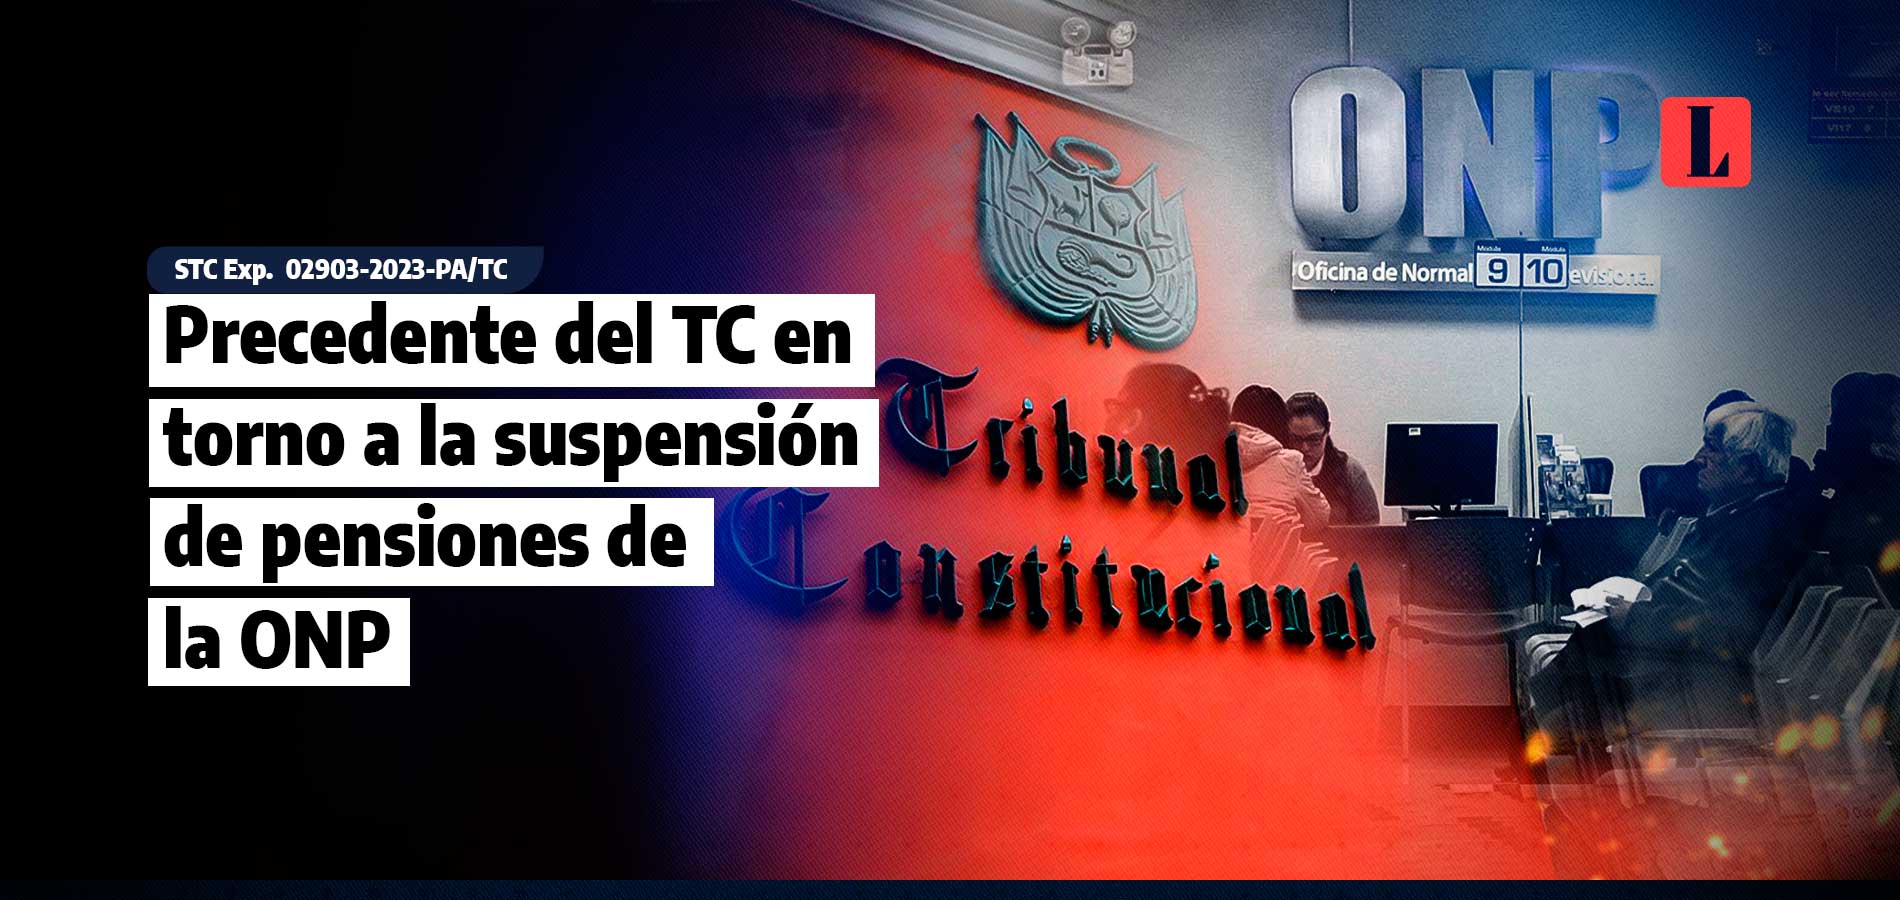 Precedente del TC en torno a la suspensión de pensiones de la ONP